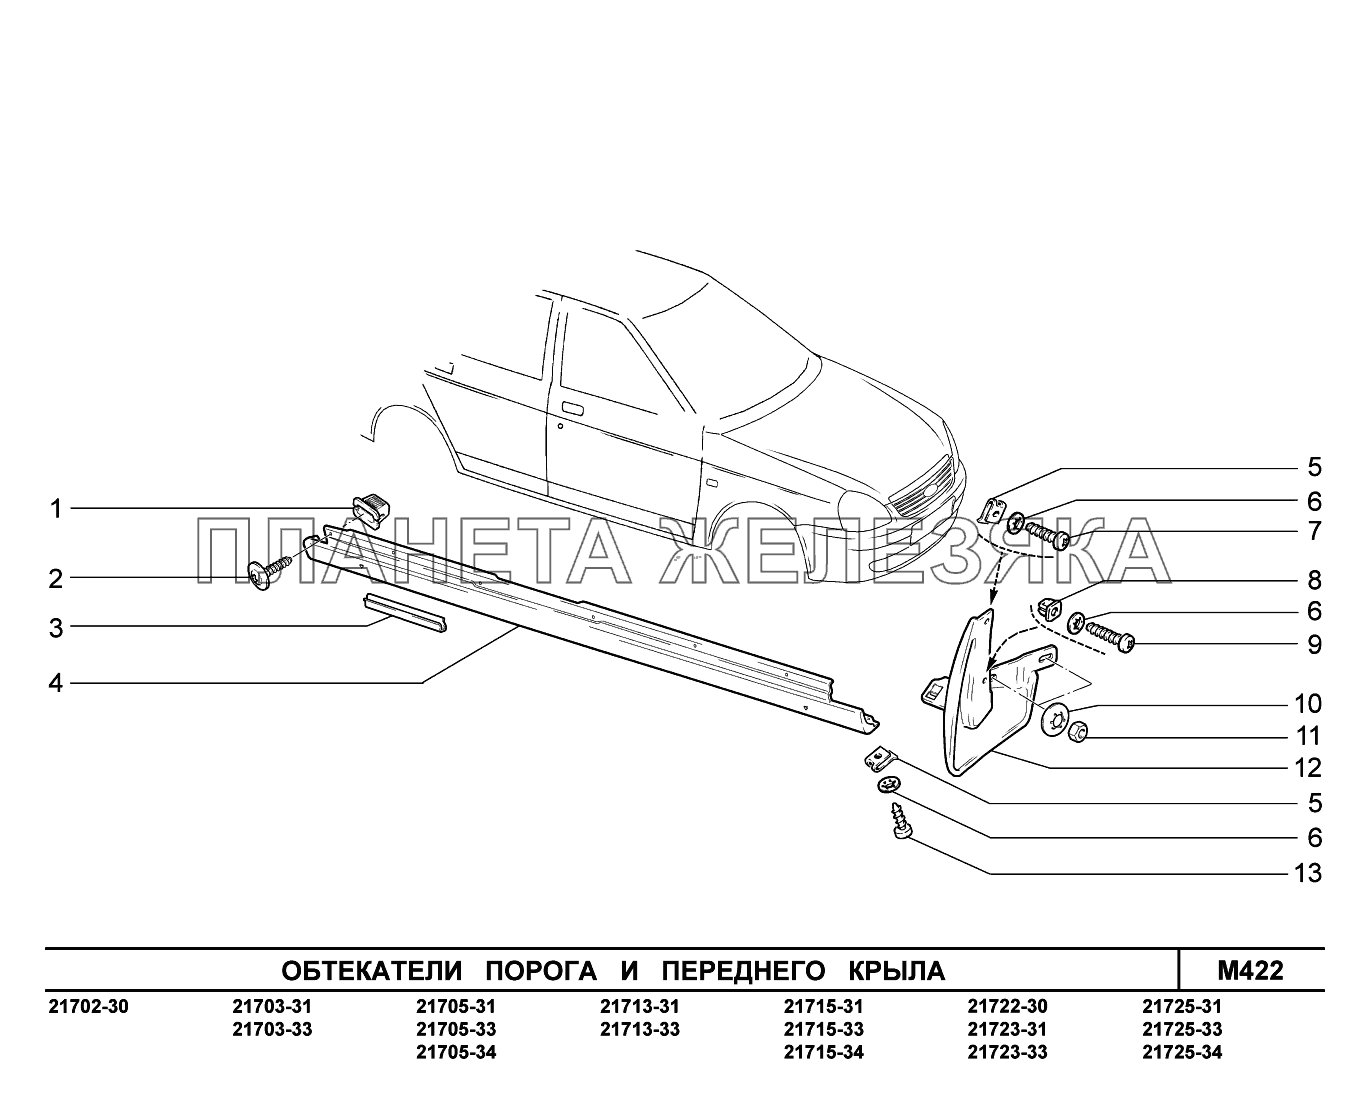 M422. Обтекатели порога и переднего крыла ВАЗ-2170 